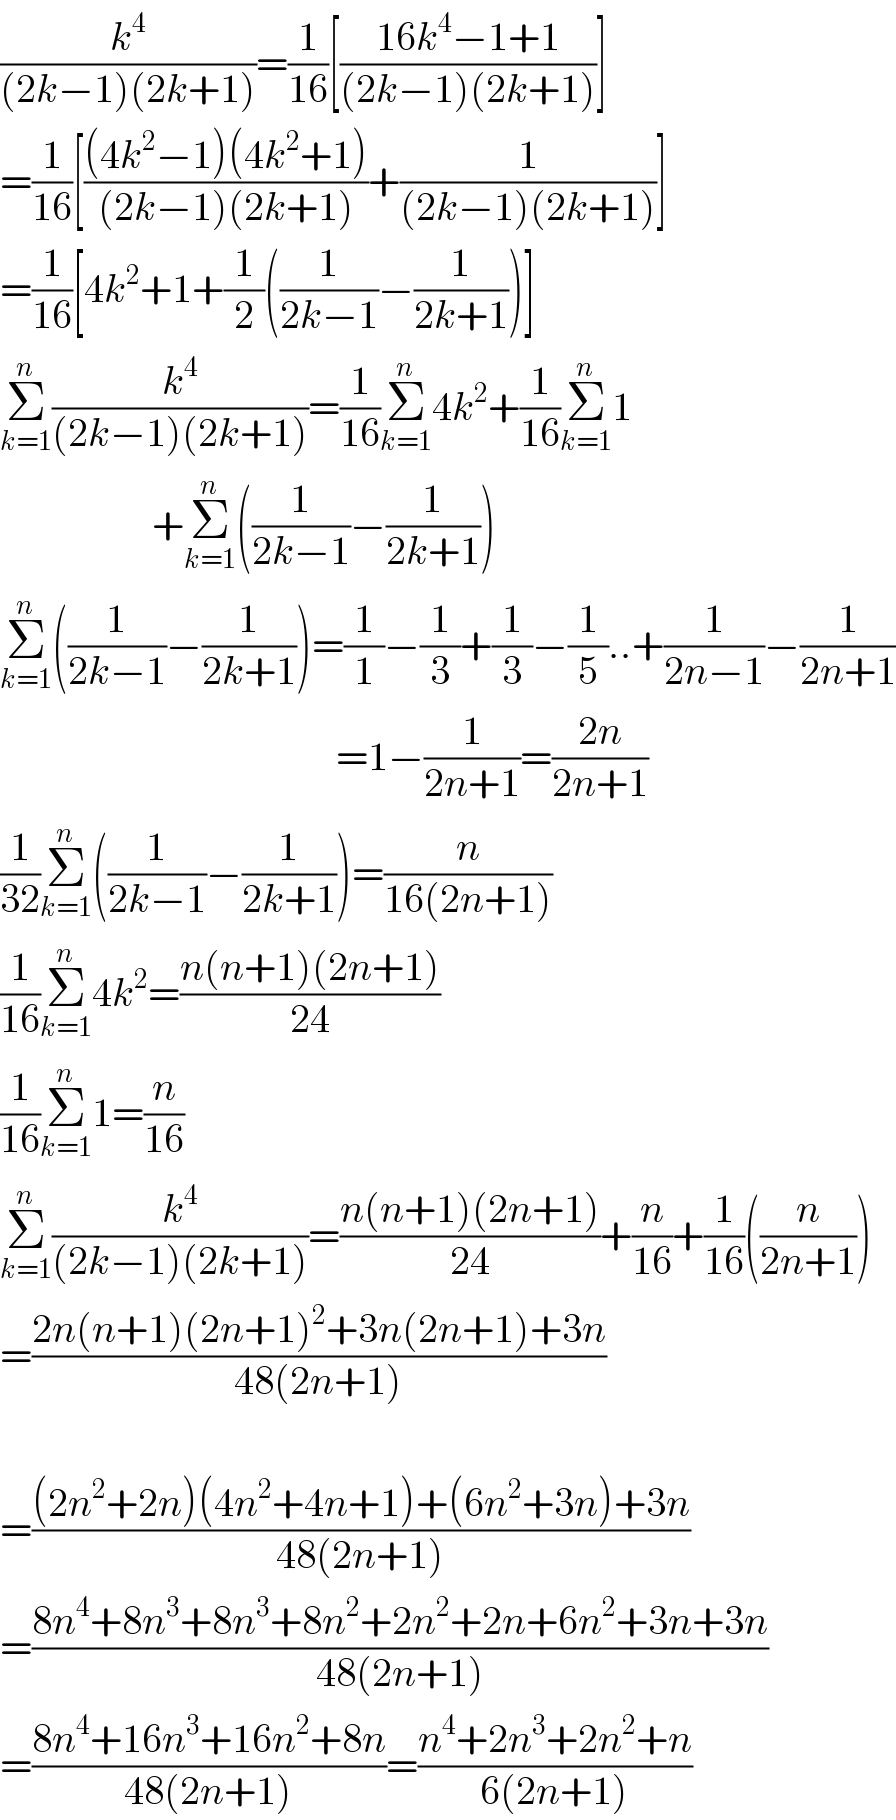 (k^4 /((2k−1)(2k+1)))=(1/(16))[((16k^4 −1+1)/((2k−1)(2k+1)))]  =(1/(16))[(((4k^2 −1)(4k^2 +1))/((2k−1)(2k+1)))+(1/((2k−1)(2k+1)))]  =(1/(16))[4k^2 +1+(1/2)((1/(2k−1))−(1/(2k+1)))]  Σ_(k=1) ^n (k^4 /((2k−1)(2k+1)))=(1/(16))Σ_(k=1) ^n 4k^2 +(1/(16))Σ_(k=1) ^n 1                     +Σ_(k=1) ^n ((1/(2k−1))−(1/(2k+1)))  Σ_(k=1) ^n ((1/(2k−1))−(1/(2k+1)))=(1/1)−(1/3)+(1/3)−(1/5)..+(1/(2n−1))−(1/(2n+1))                                            =1−(1/(2n+1))=((2n)/(2n+1))  (1/(32))Σ_(k=1) ^n ((1/(2k−1))−(1/(2k+1)))=(n/(16(2n+1)))  (1/(16))Σ_(k=1) ^n 4k^2 =((n(n+1)(2n+1))/(24))  (1/(16))Σ_(k=1) ^n 1=(n/(16))  Σ_(k=1) ^n (k^4 /((2k−1)(2k+1)))=((n(n+1)(2n+1))/(24))+(n/(16))+(1/(16))((n/(2n+1)))  =((2n(n+1)(2n+1)^2 +3n(2n+1)+3n)/(48(2n+1)))    =(((2n^2 +2n)(4n^2 +4n+1)+(6n^2 +3n)+3n)/(48(2n+1)))  =((8n^4 +8n^3 +8n^3 +8n^2 +2n^2 +2n+6n^2 +3n+3n)/(48(2n+1)))  =((8n^4 +16n^3 +16n^2 +8n)/(48(2n+1)))=((n^4 +2n^3 +2n^2 +n)/(6(2n+1)))  